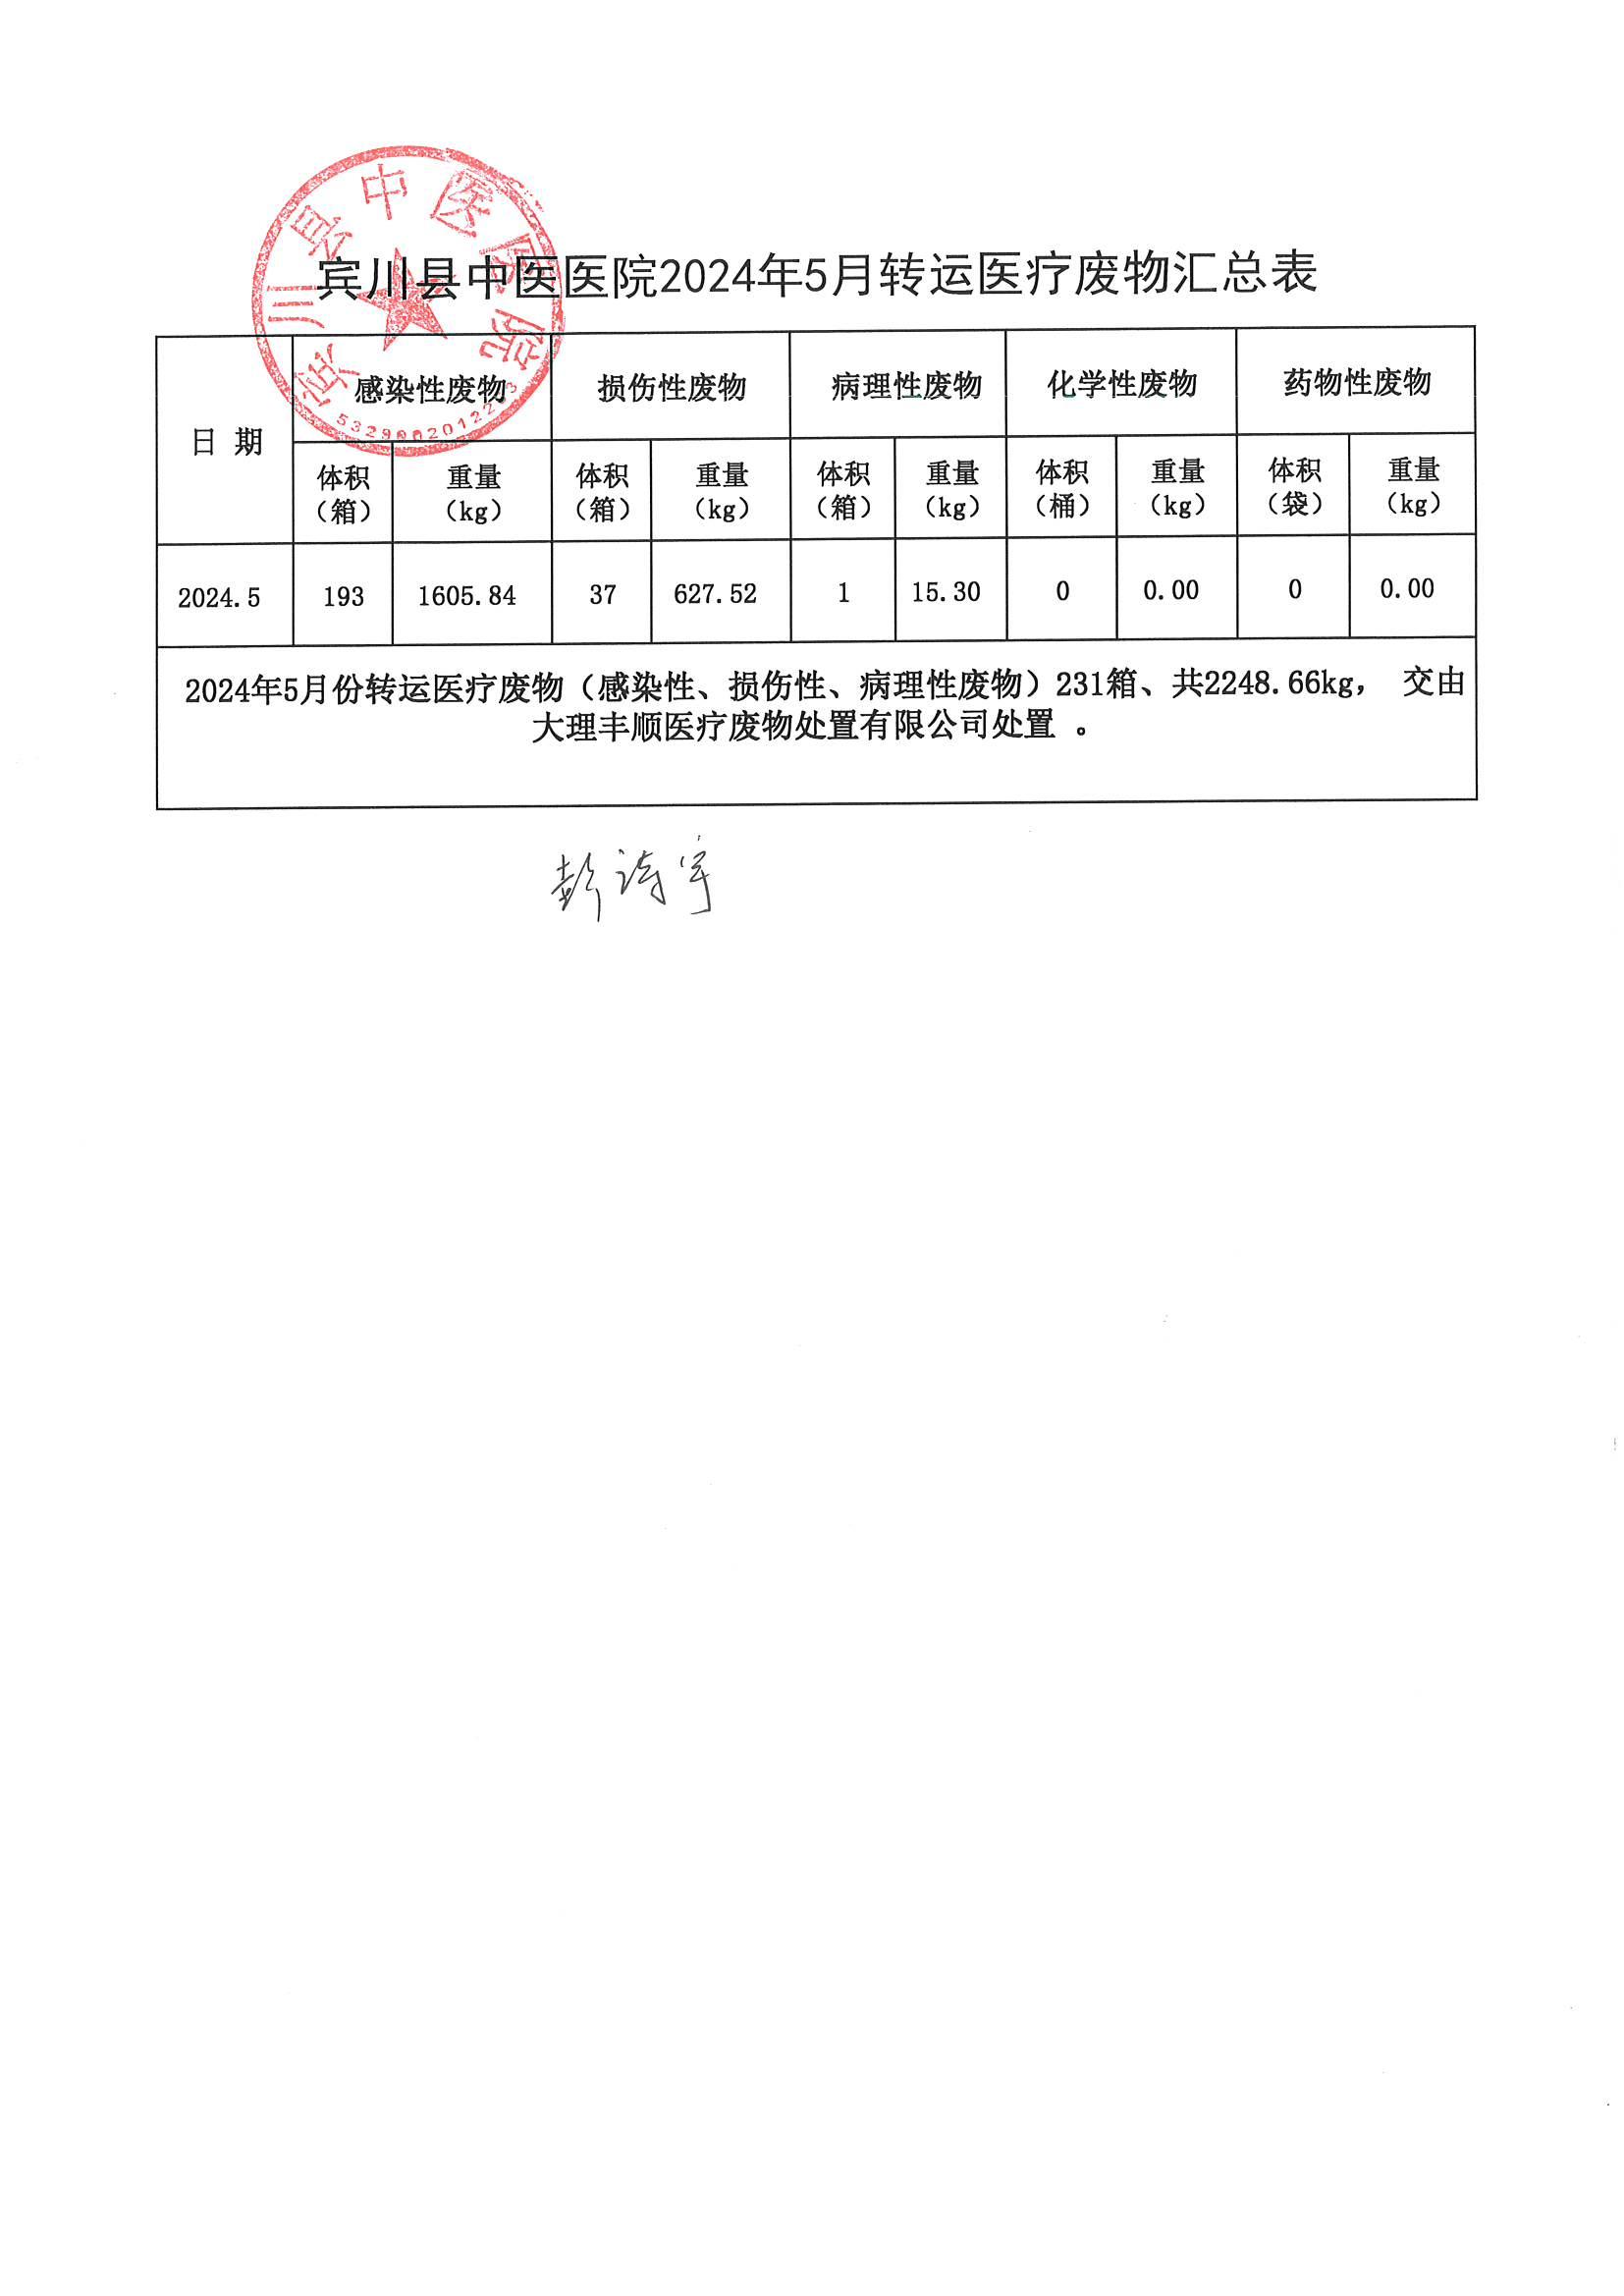 宾川县中医医院2024年5月转运医疗废物公示_00.jpg